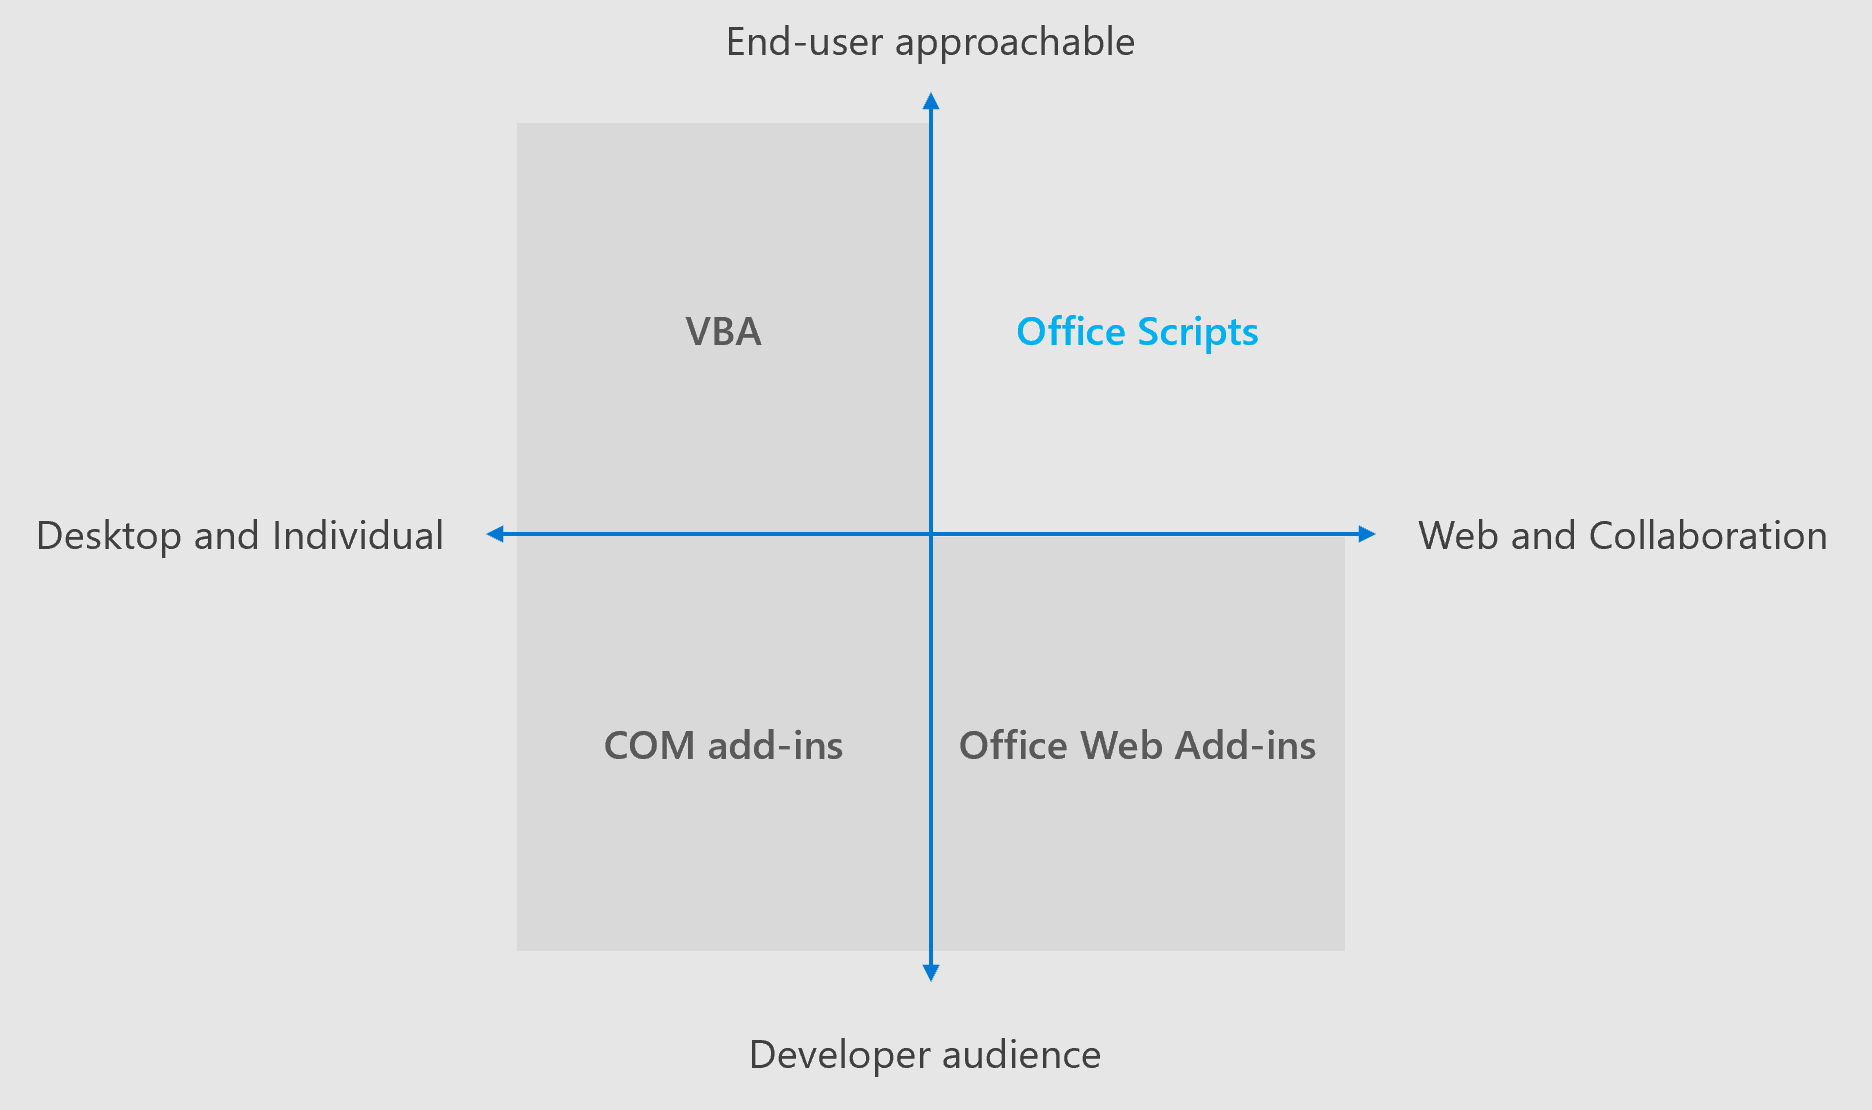 Diagramme à quatre quadrants montrant les domaines d’intérêt pour différentes solutions d’extensibilité Office. Les scripts Office et les compléments web Office sont axés sur les expériences multiplateformes et la collaboration. Les scripts Office s’adressent aux utilisateurs finaux, tandis que les compléments Web Office ciblent les développeurs professionnels.